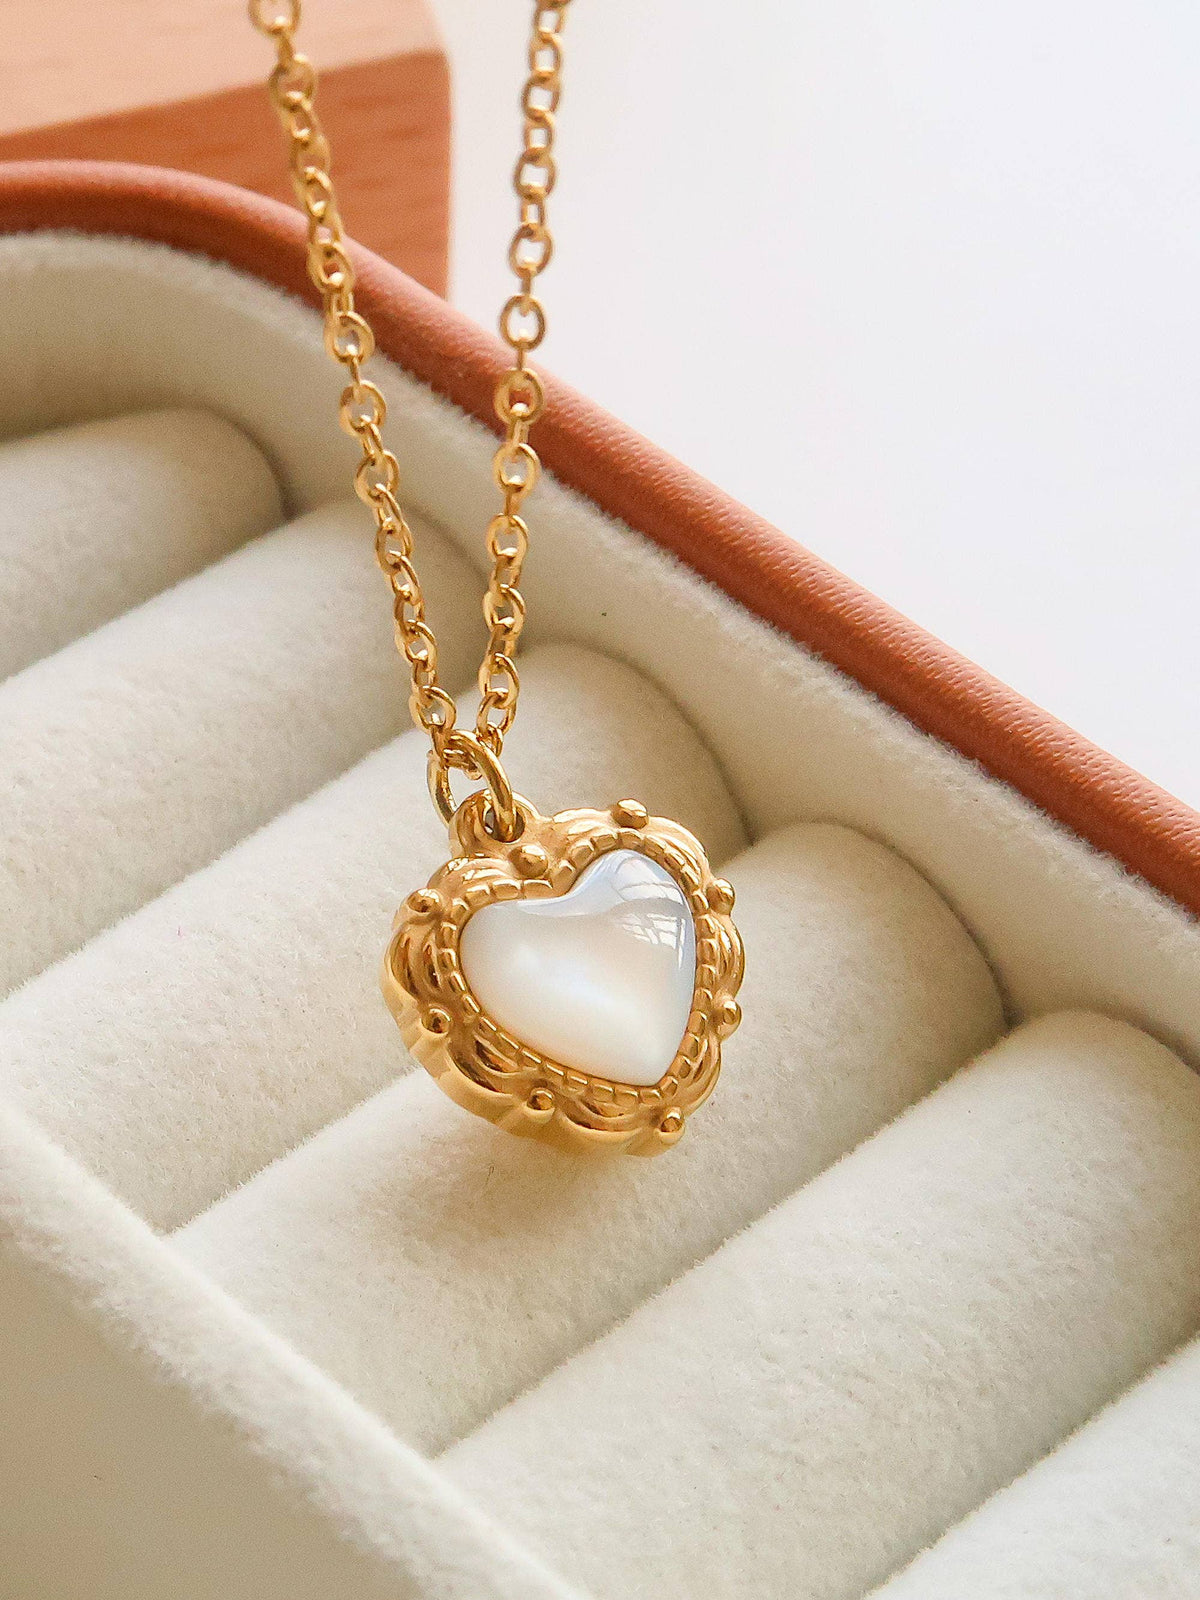 Vintage Heart Necklace & Earrings